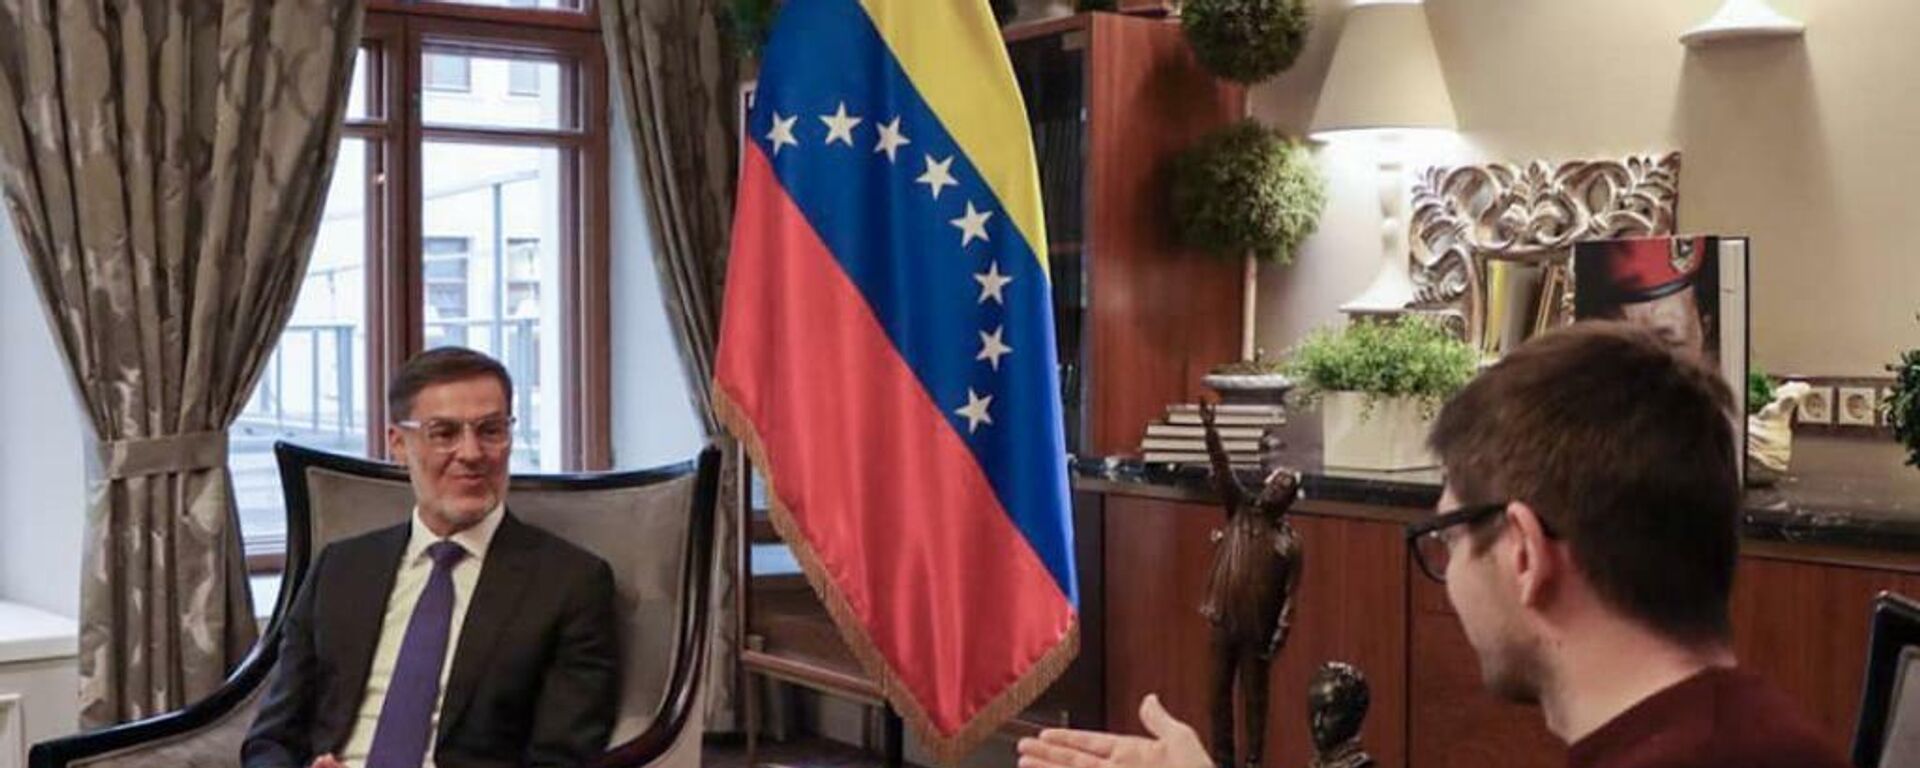 Félix Plasencia, ministro de Relaciones Internacionales de Venezuela - Sputnik Mundo, 1920, 09.11.2021